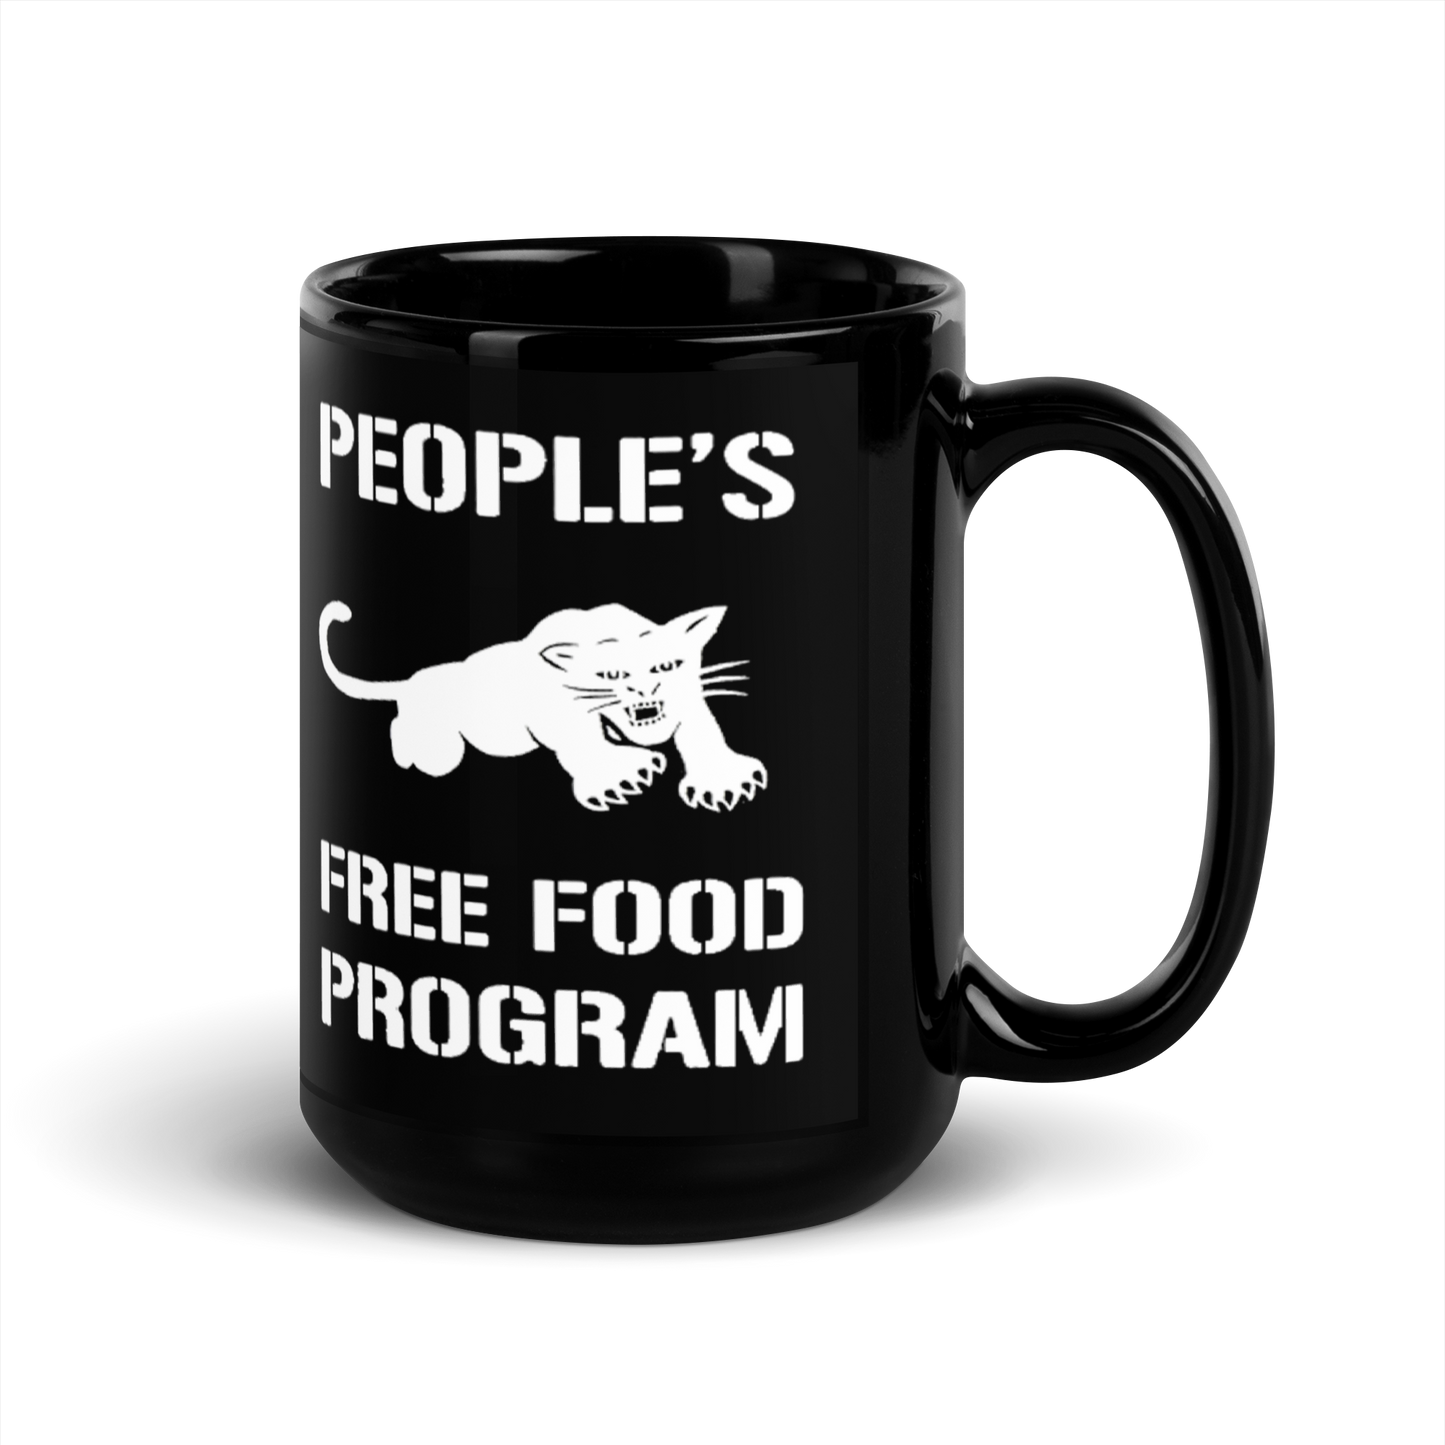 Black Panther Free Food Program Mug